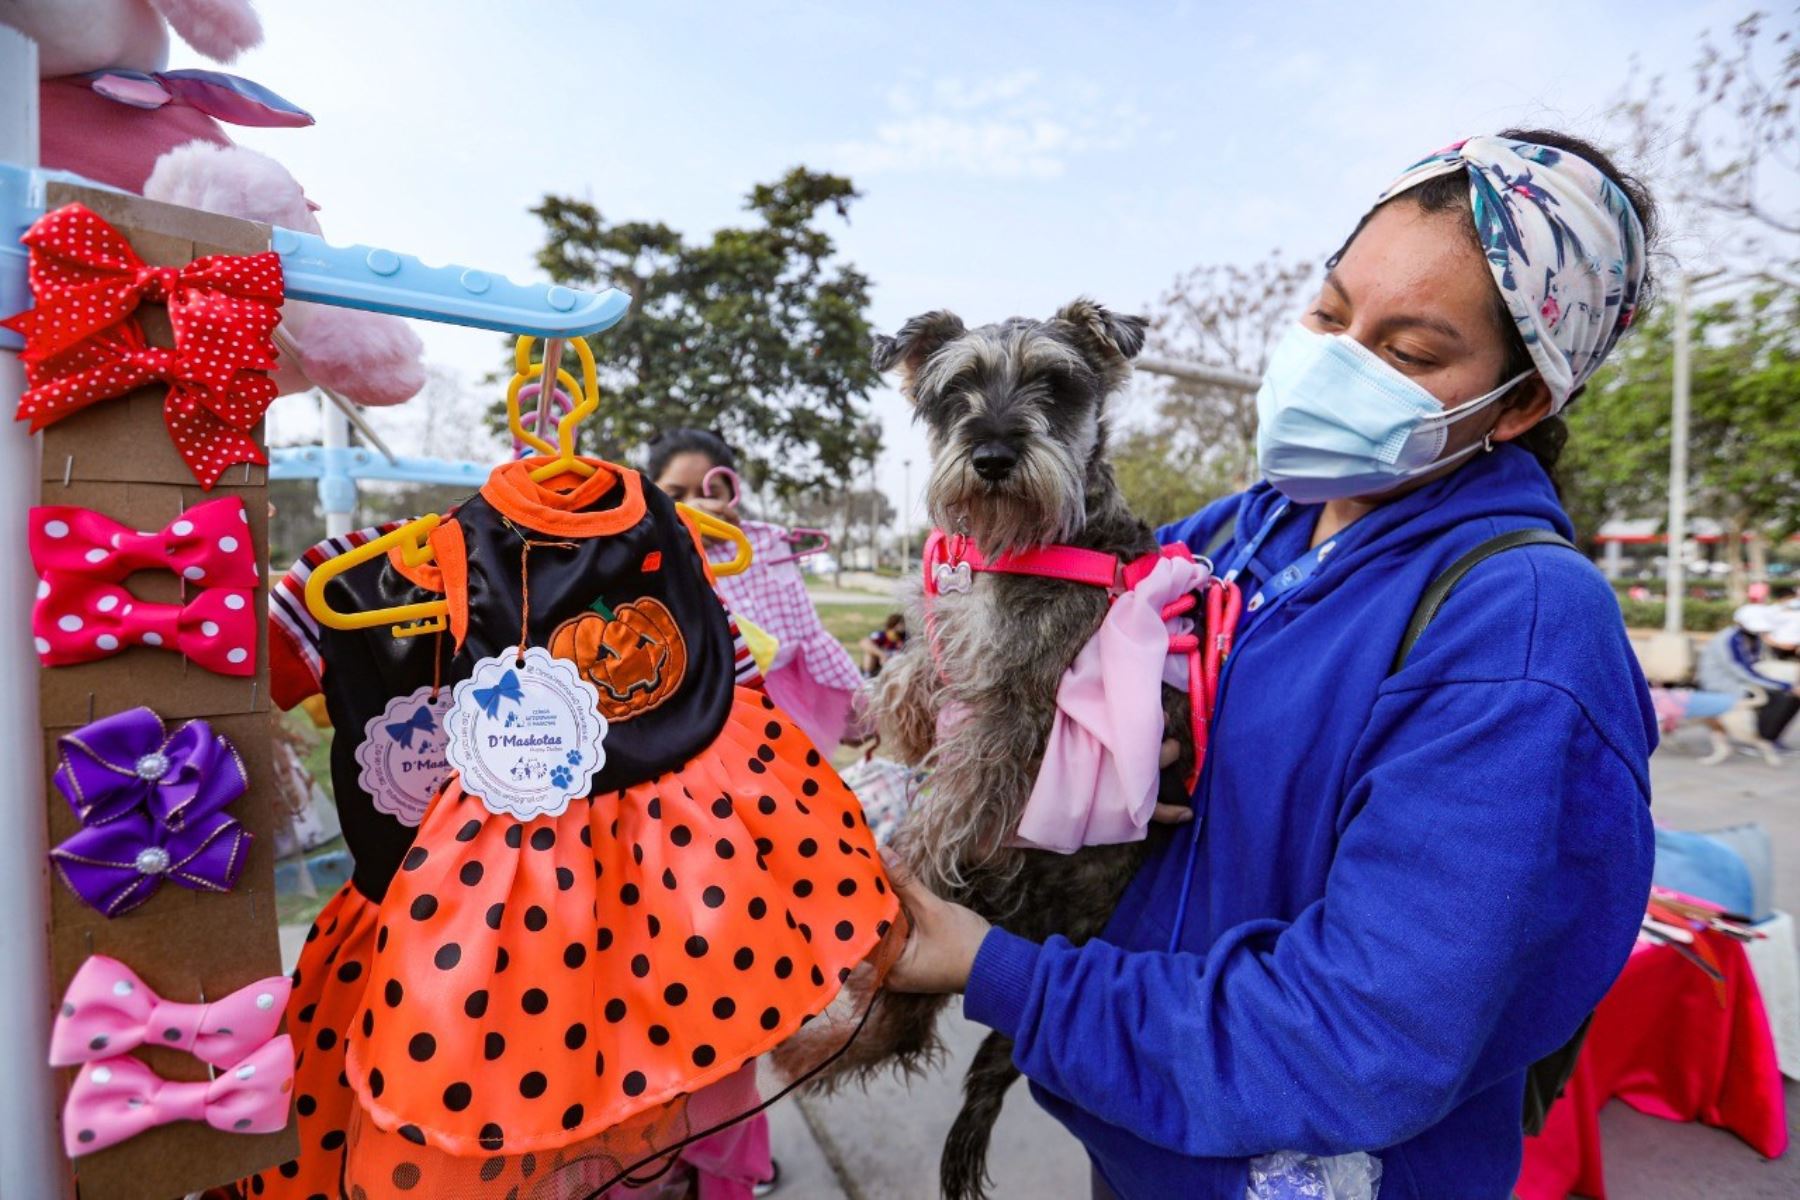 El festival canino se desarrollará de 2 p.m. a 5 p.m., tiempo en el que se espera beneficiar a cerca de 200 perritos con vacunas y la venta de productos para ellos. ANDINA